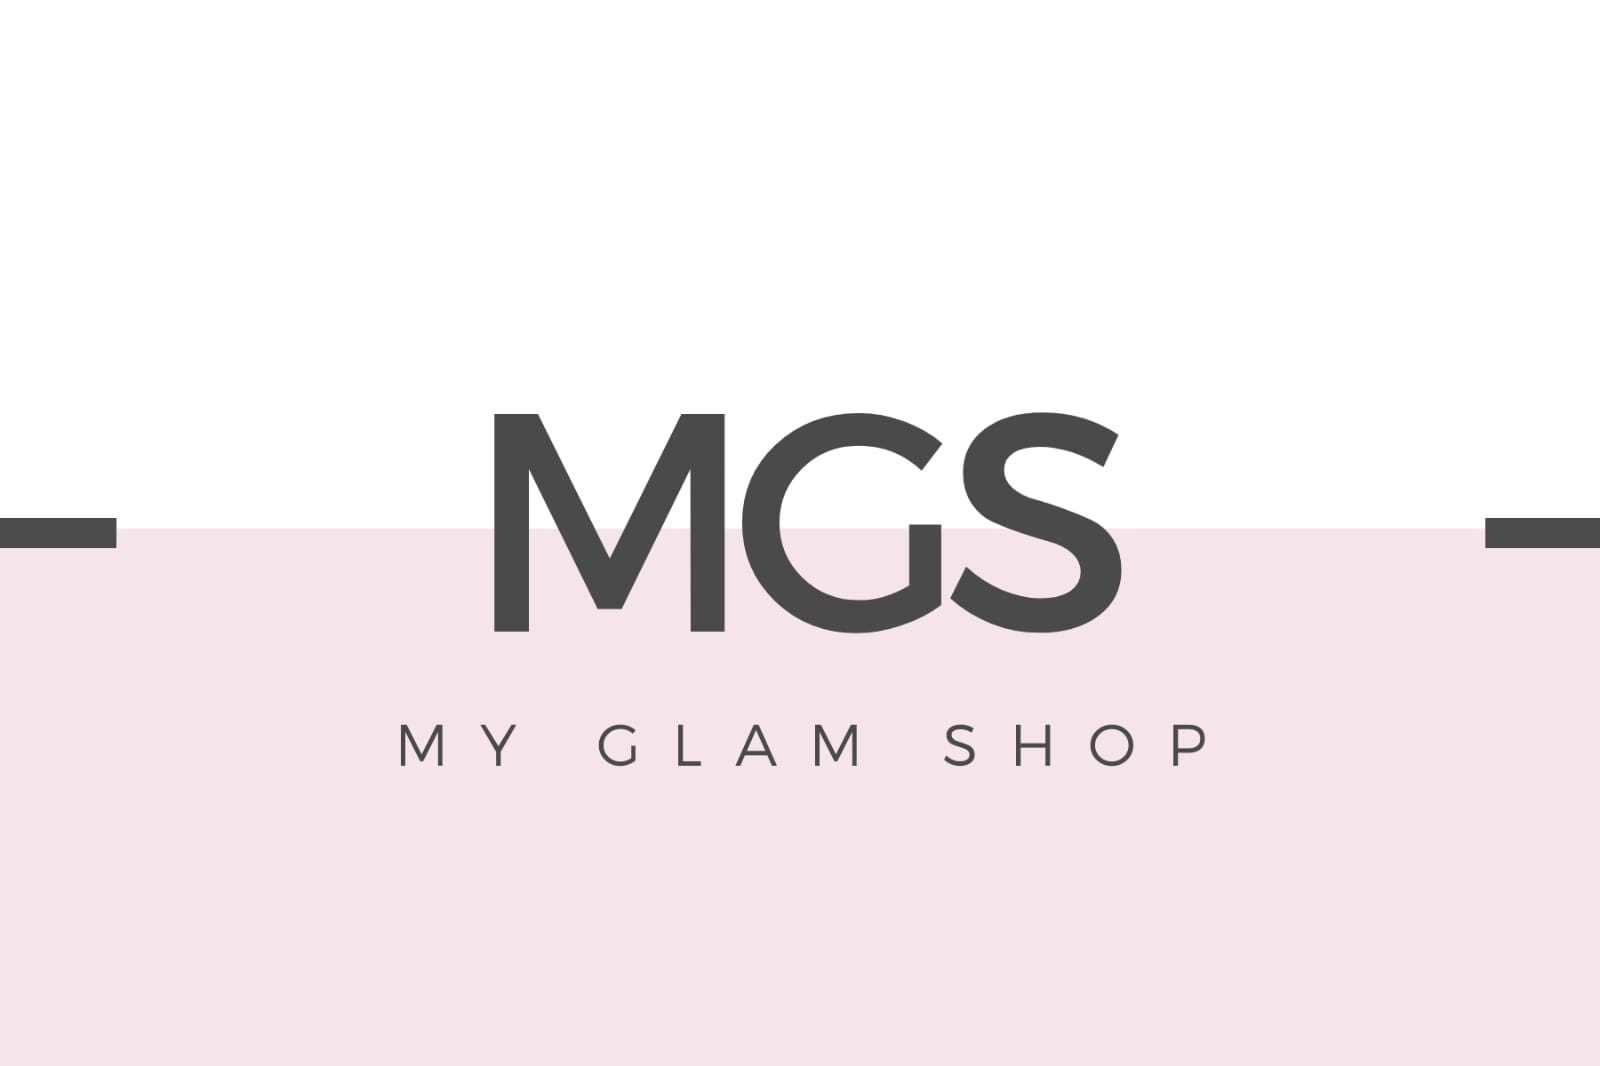 My Glam Shop